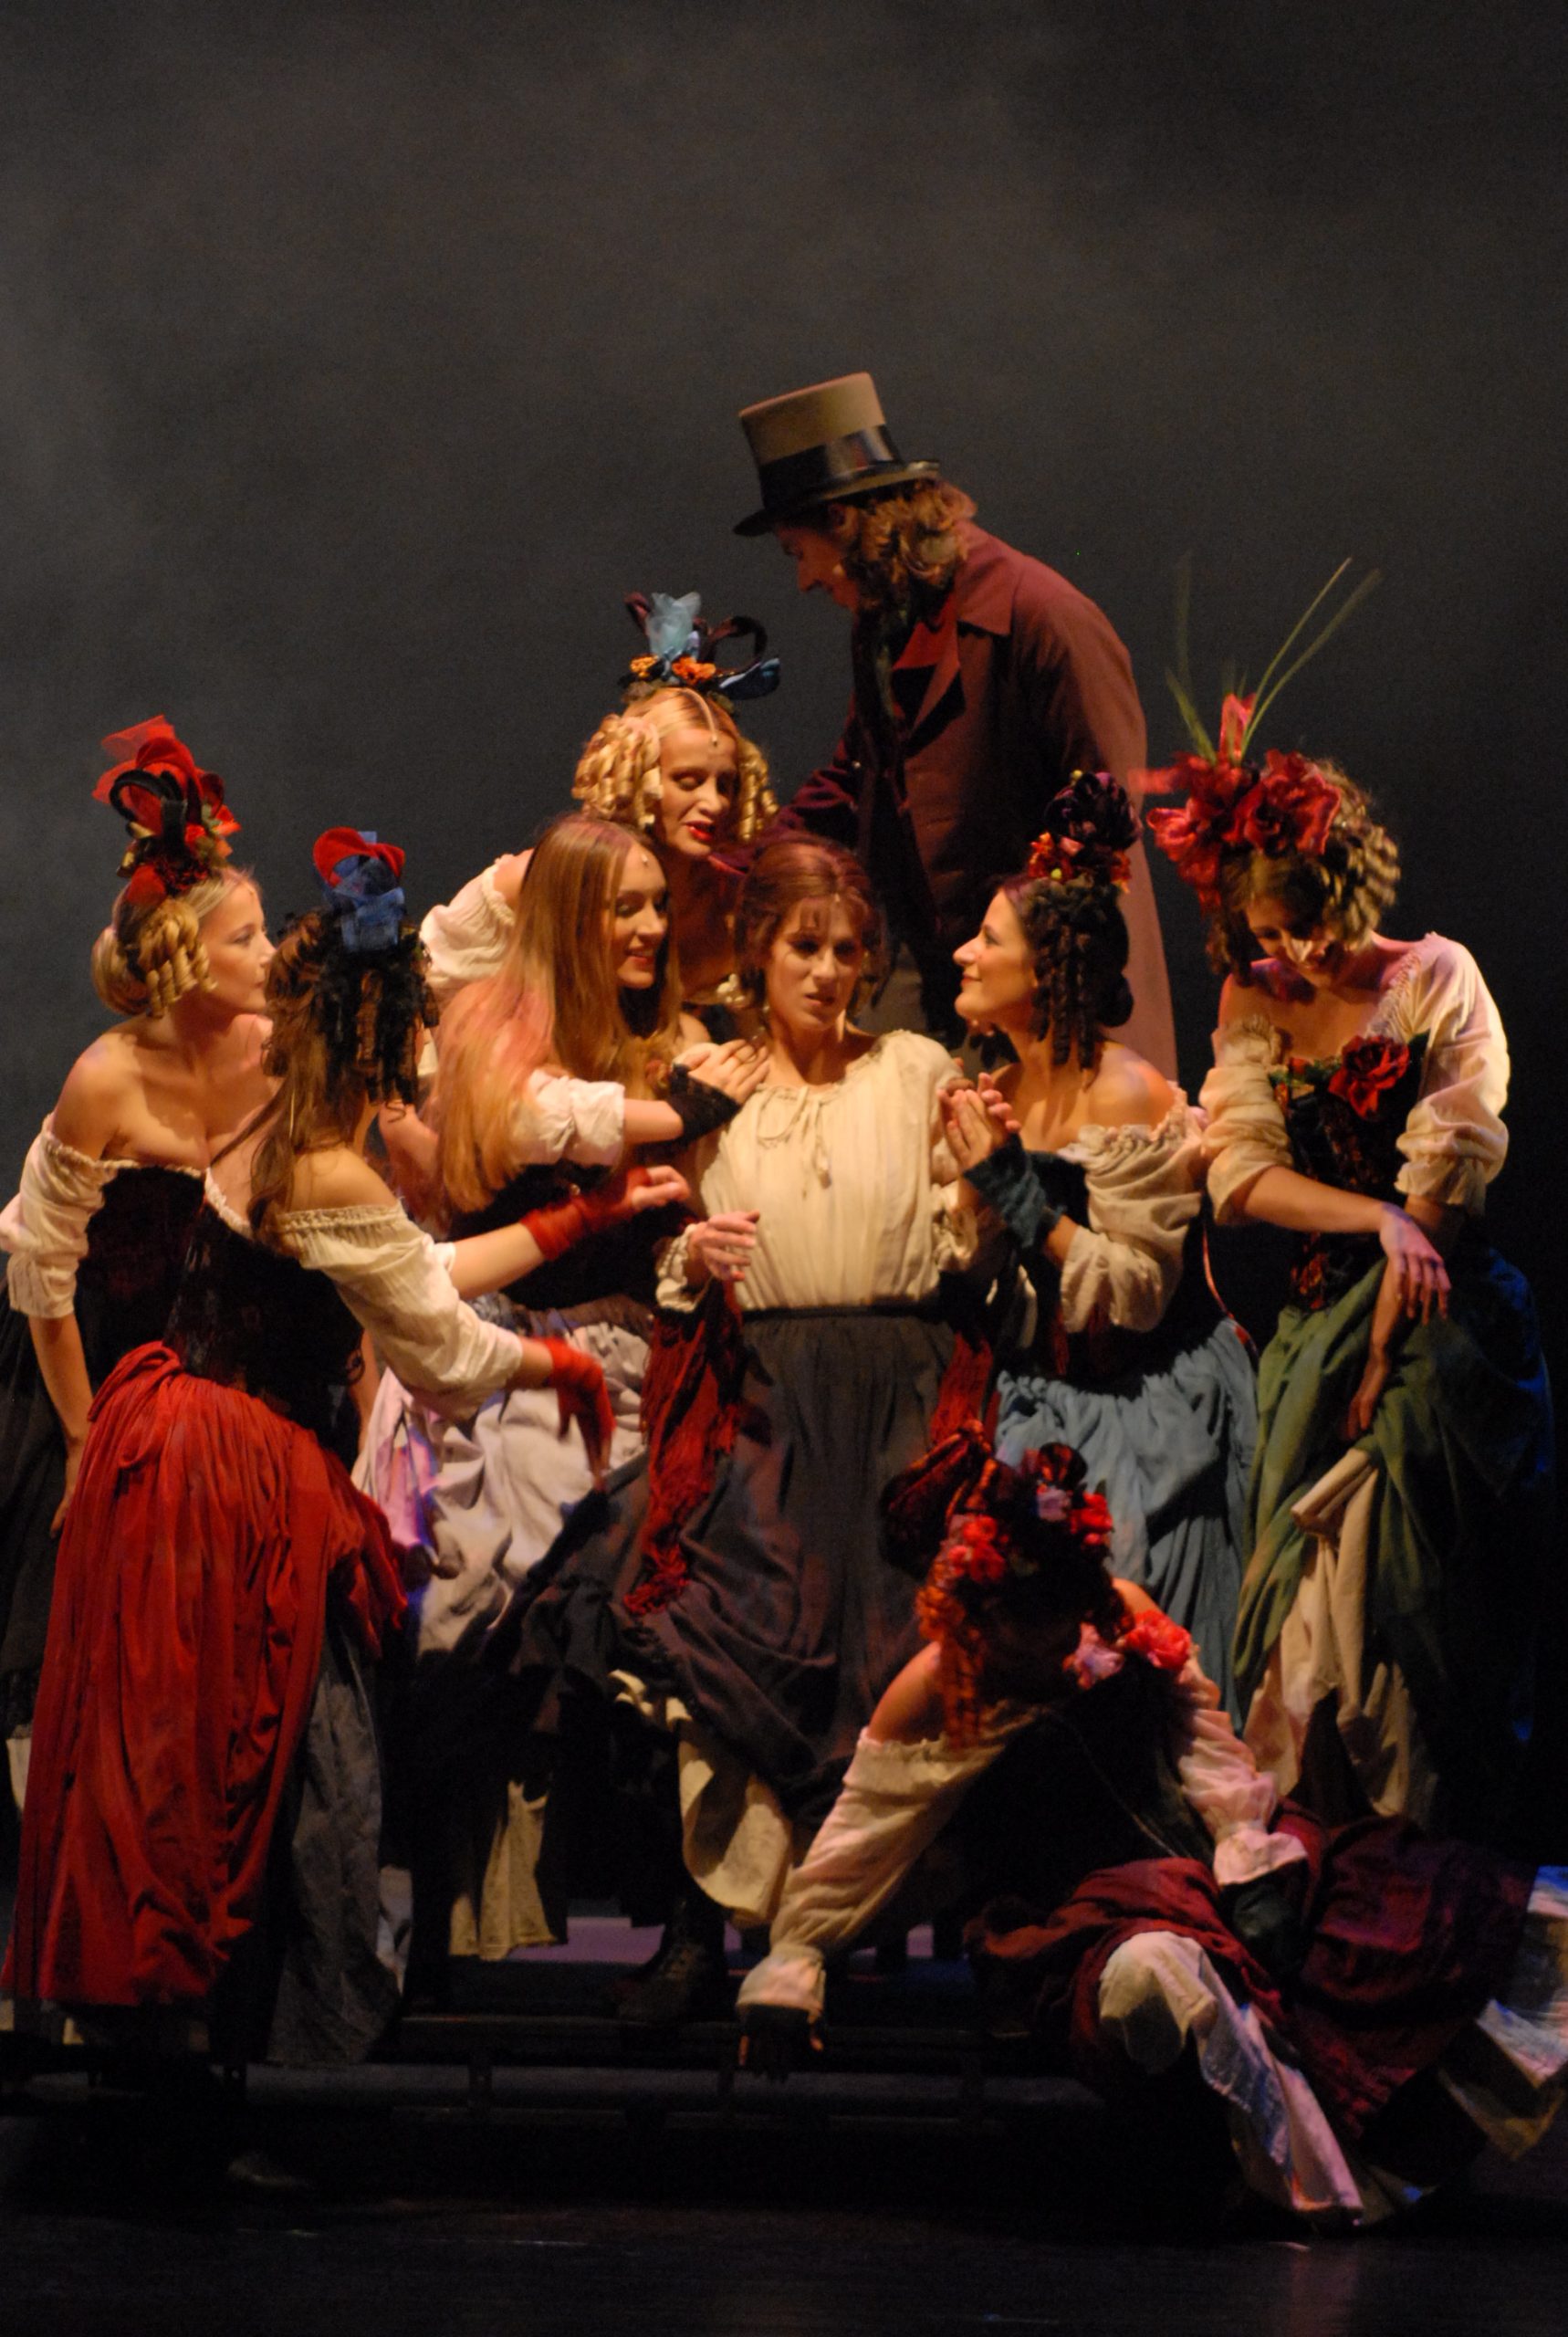 Mjuzikl Jadnici, Les Miserables, Opera i teatar Madlenianum, stoto izvođenje, izvodjenje